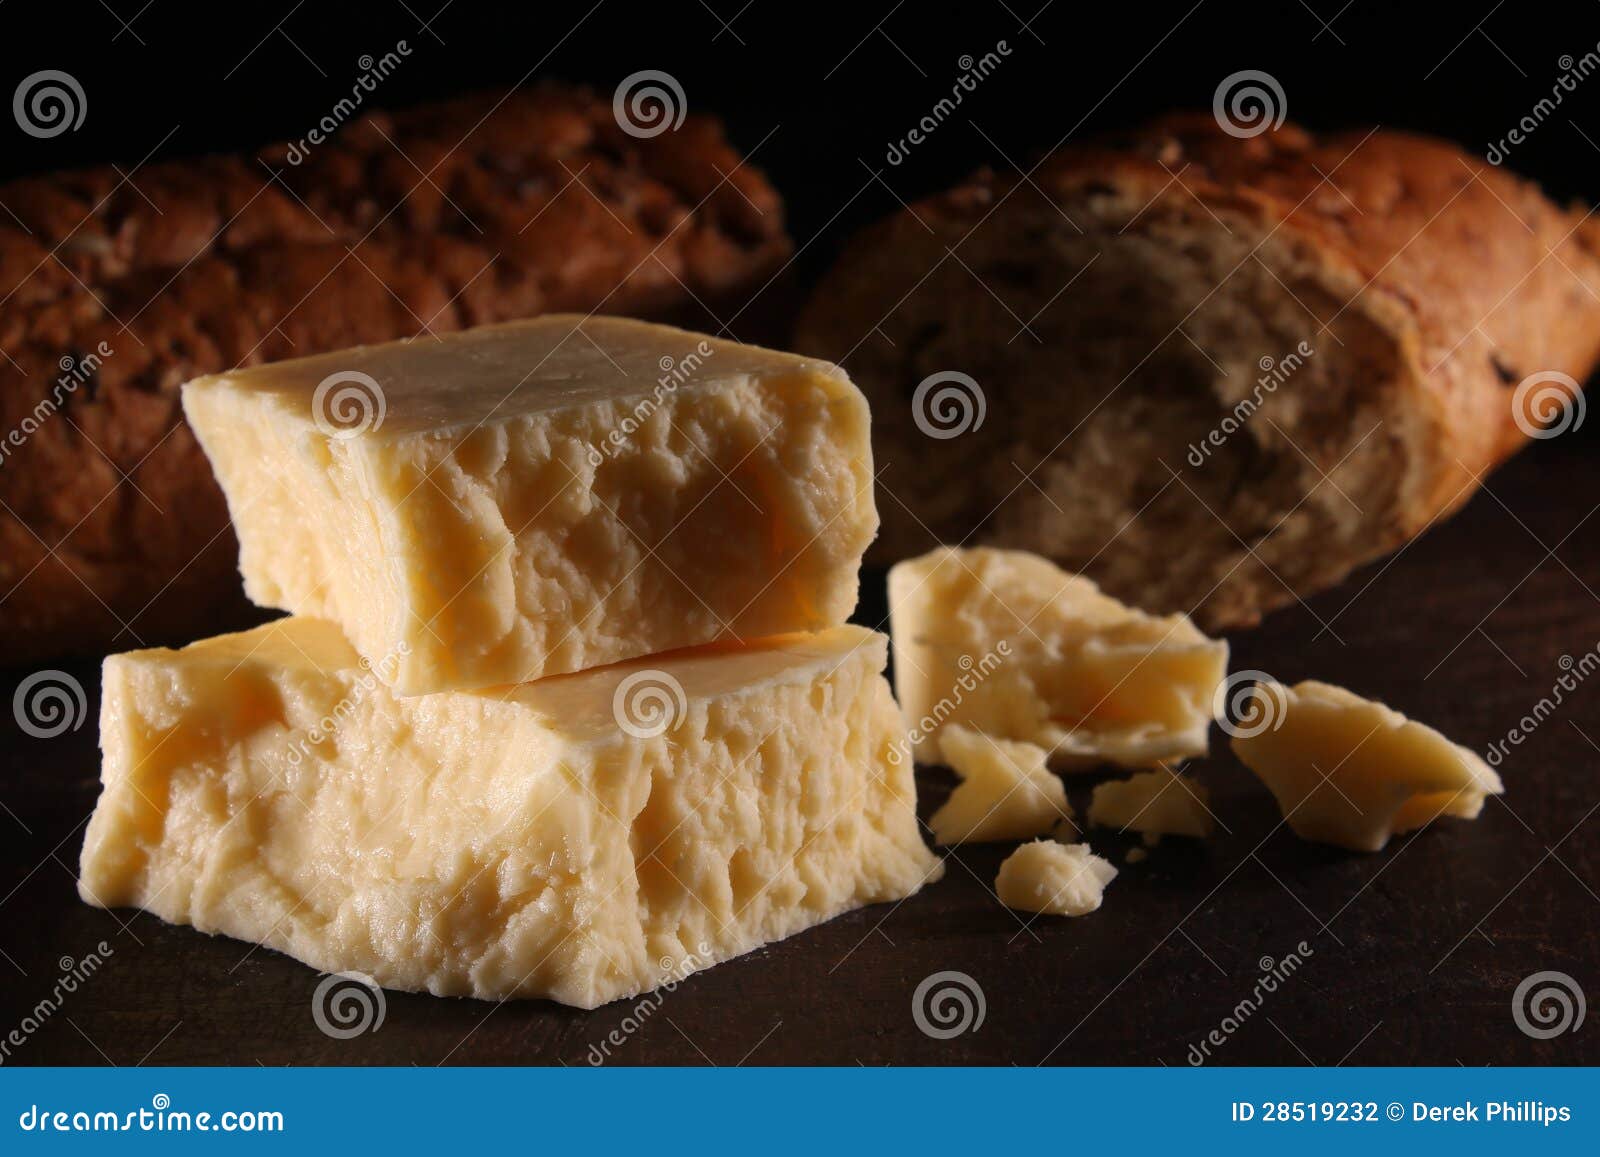 Rustikaler reifer Cheddar-Käse und Brot. Reifer Cheddar-Käse der rustikalen Art auf einem hölzernen Vorstand mit einem dunklen Hintergrund. Brown, Getreidespeicherartbrot im Hintergrund.